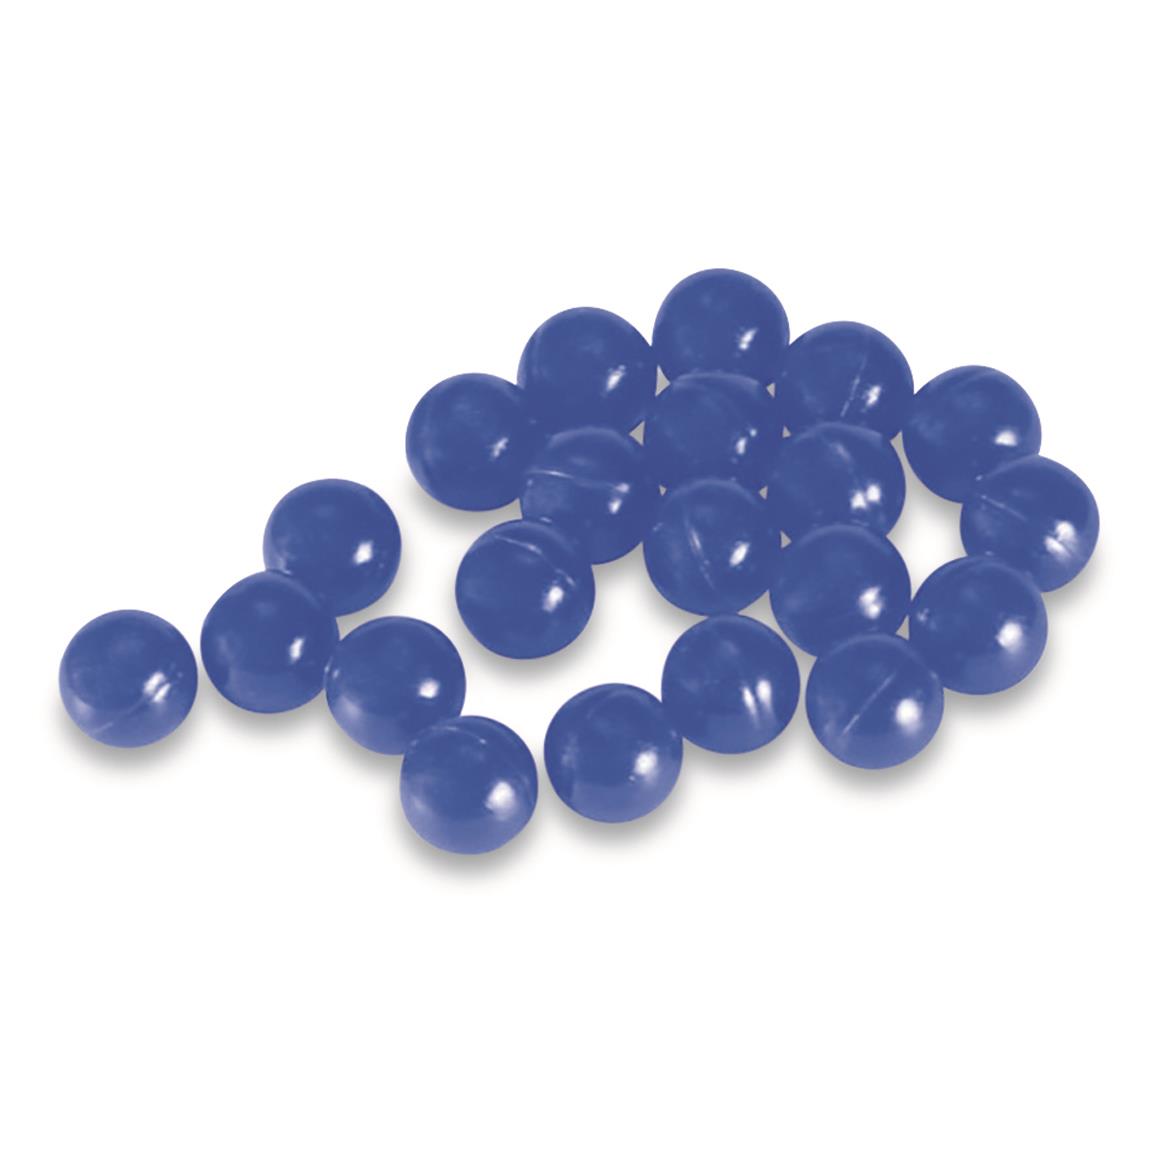 T4E .43 caliber Paintballs, 430 Count, Blue